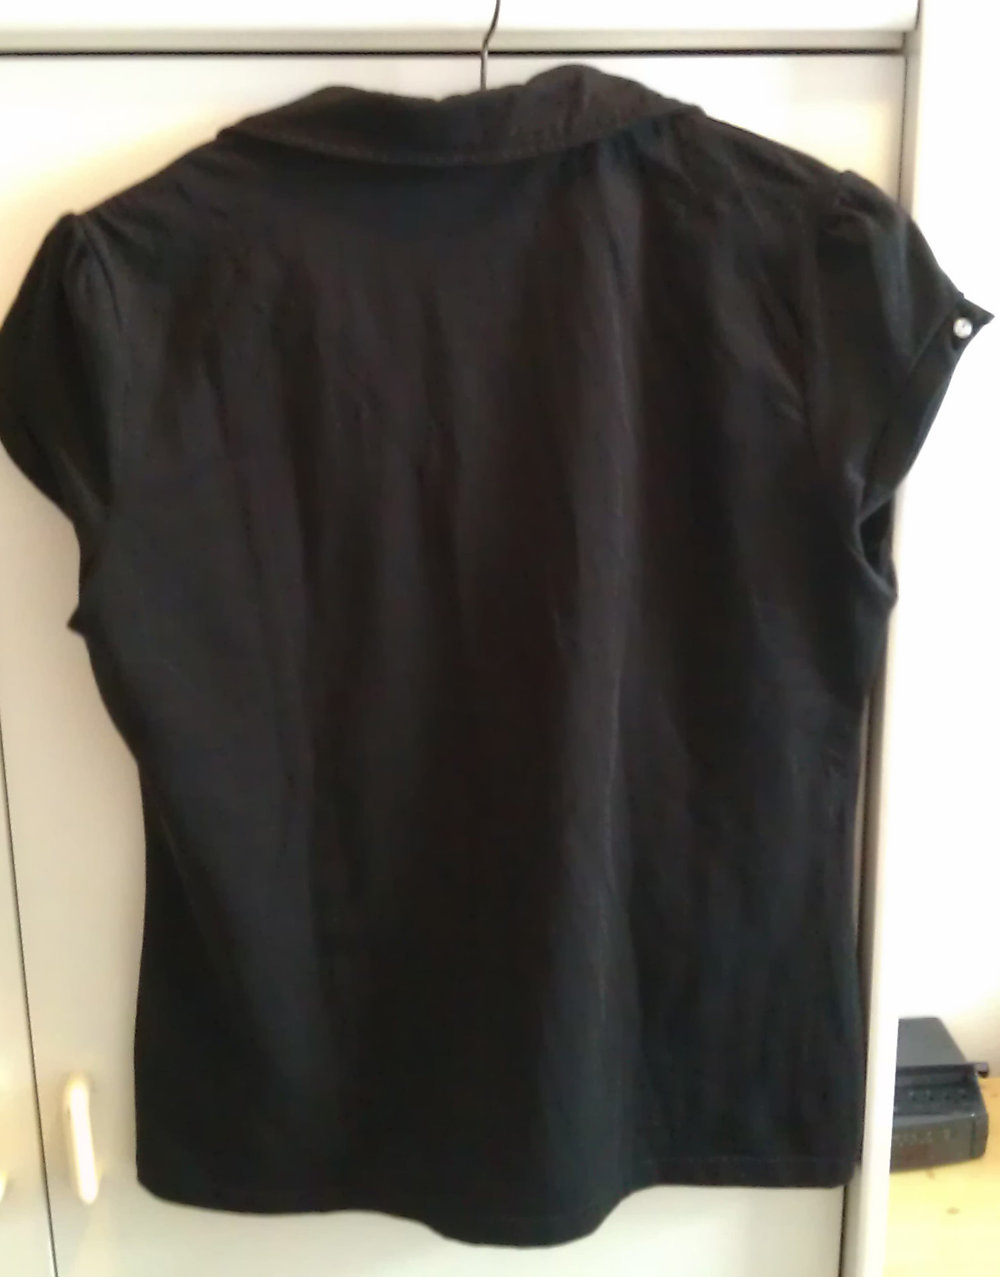 Elegante schwarze Bluse mit Strasssteinen 42/44